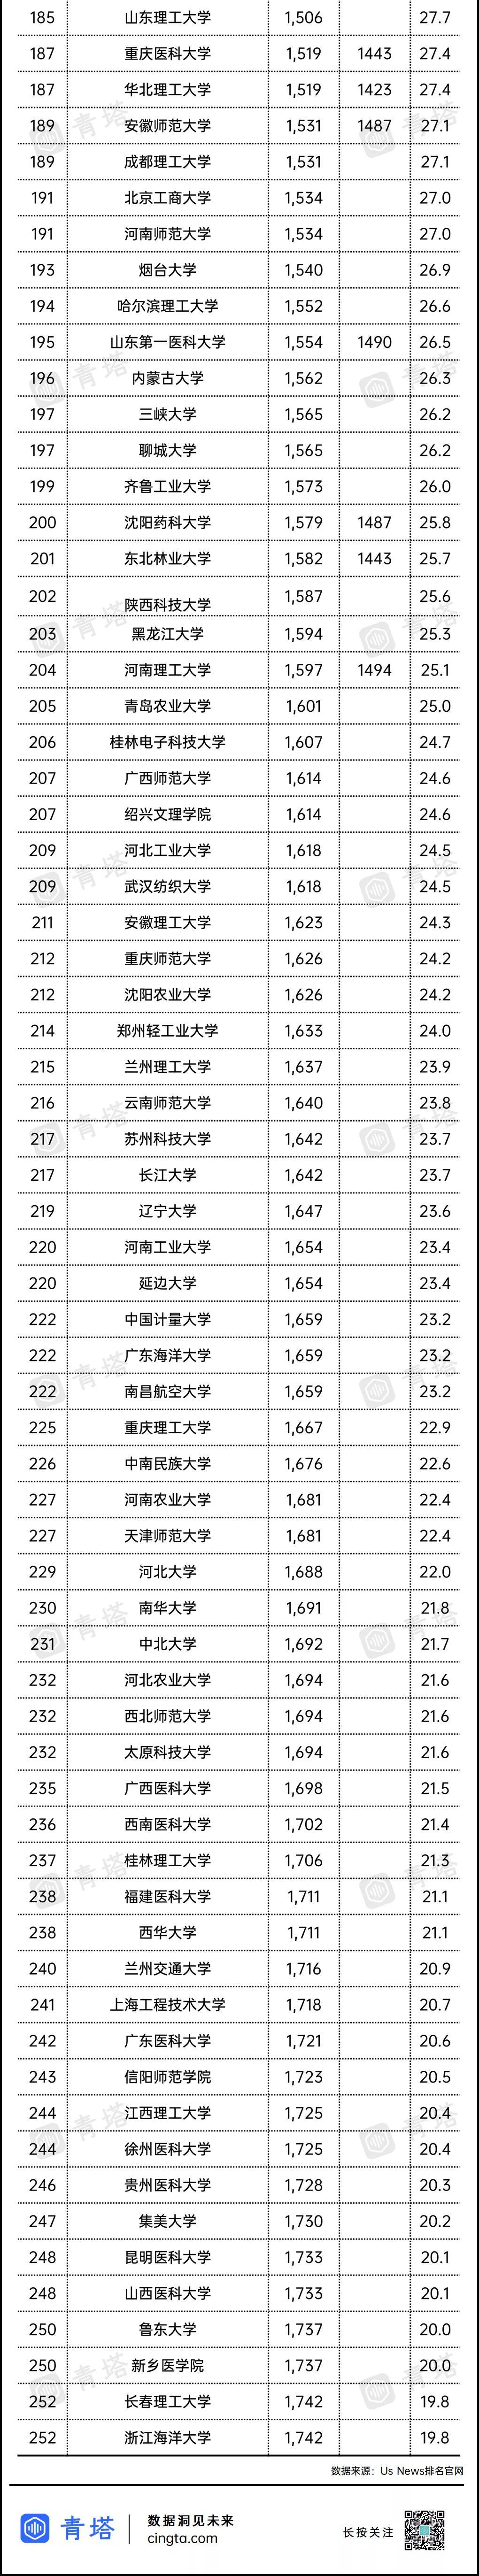 套丝机排行榜_2016年中国套丝机十大品牌企业排名